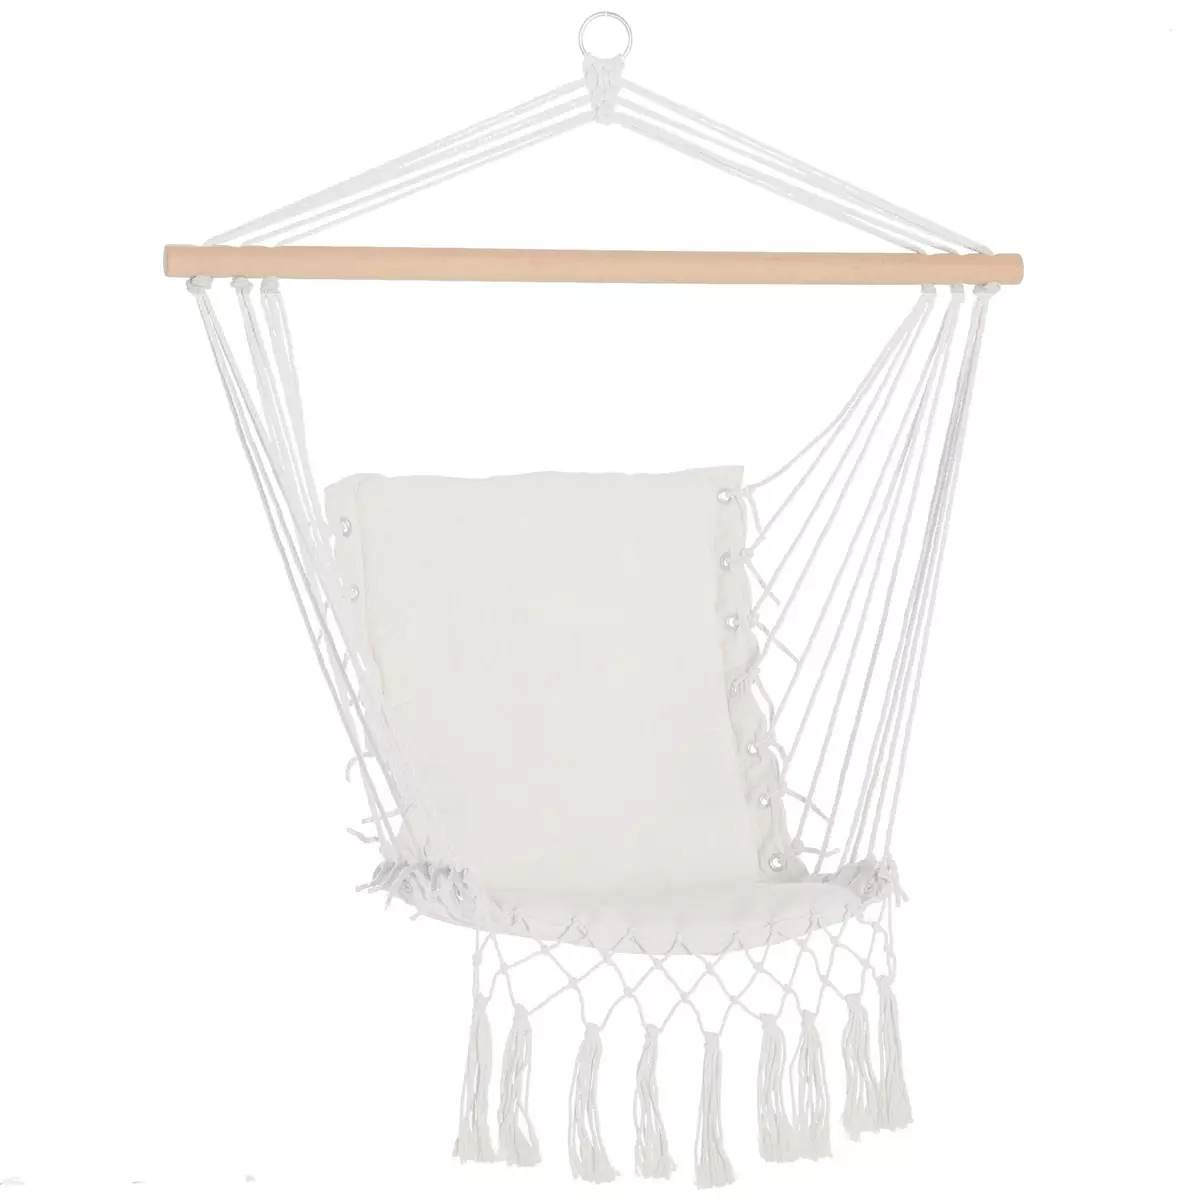 OUTSUNNY Chaise suspendue chaise hamac de voyage portable assise dossier rembourrés macramé coton polyester beige